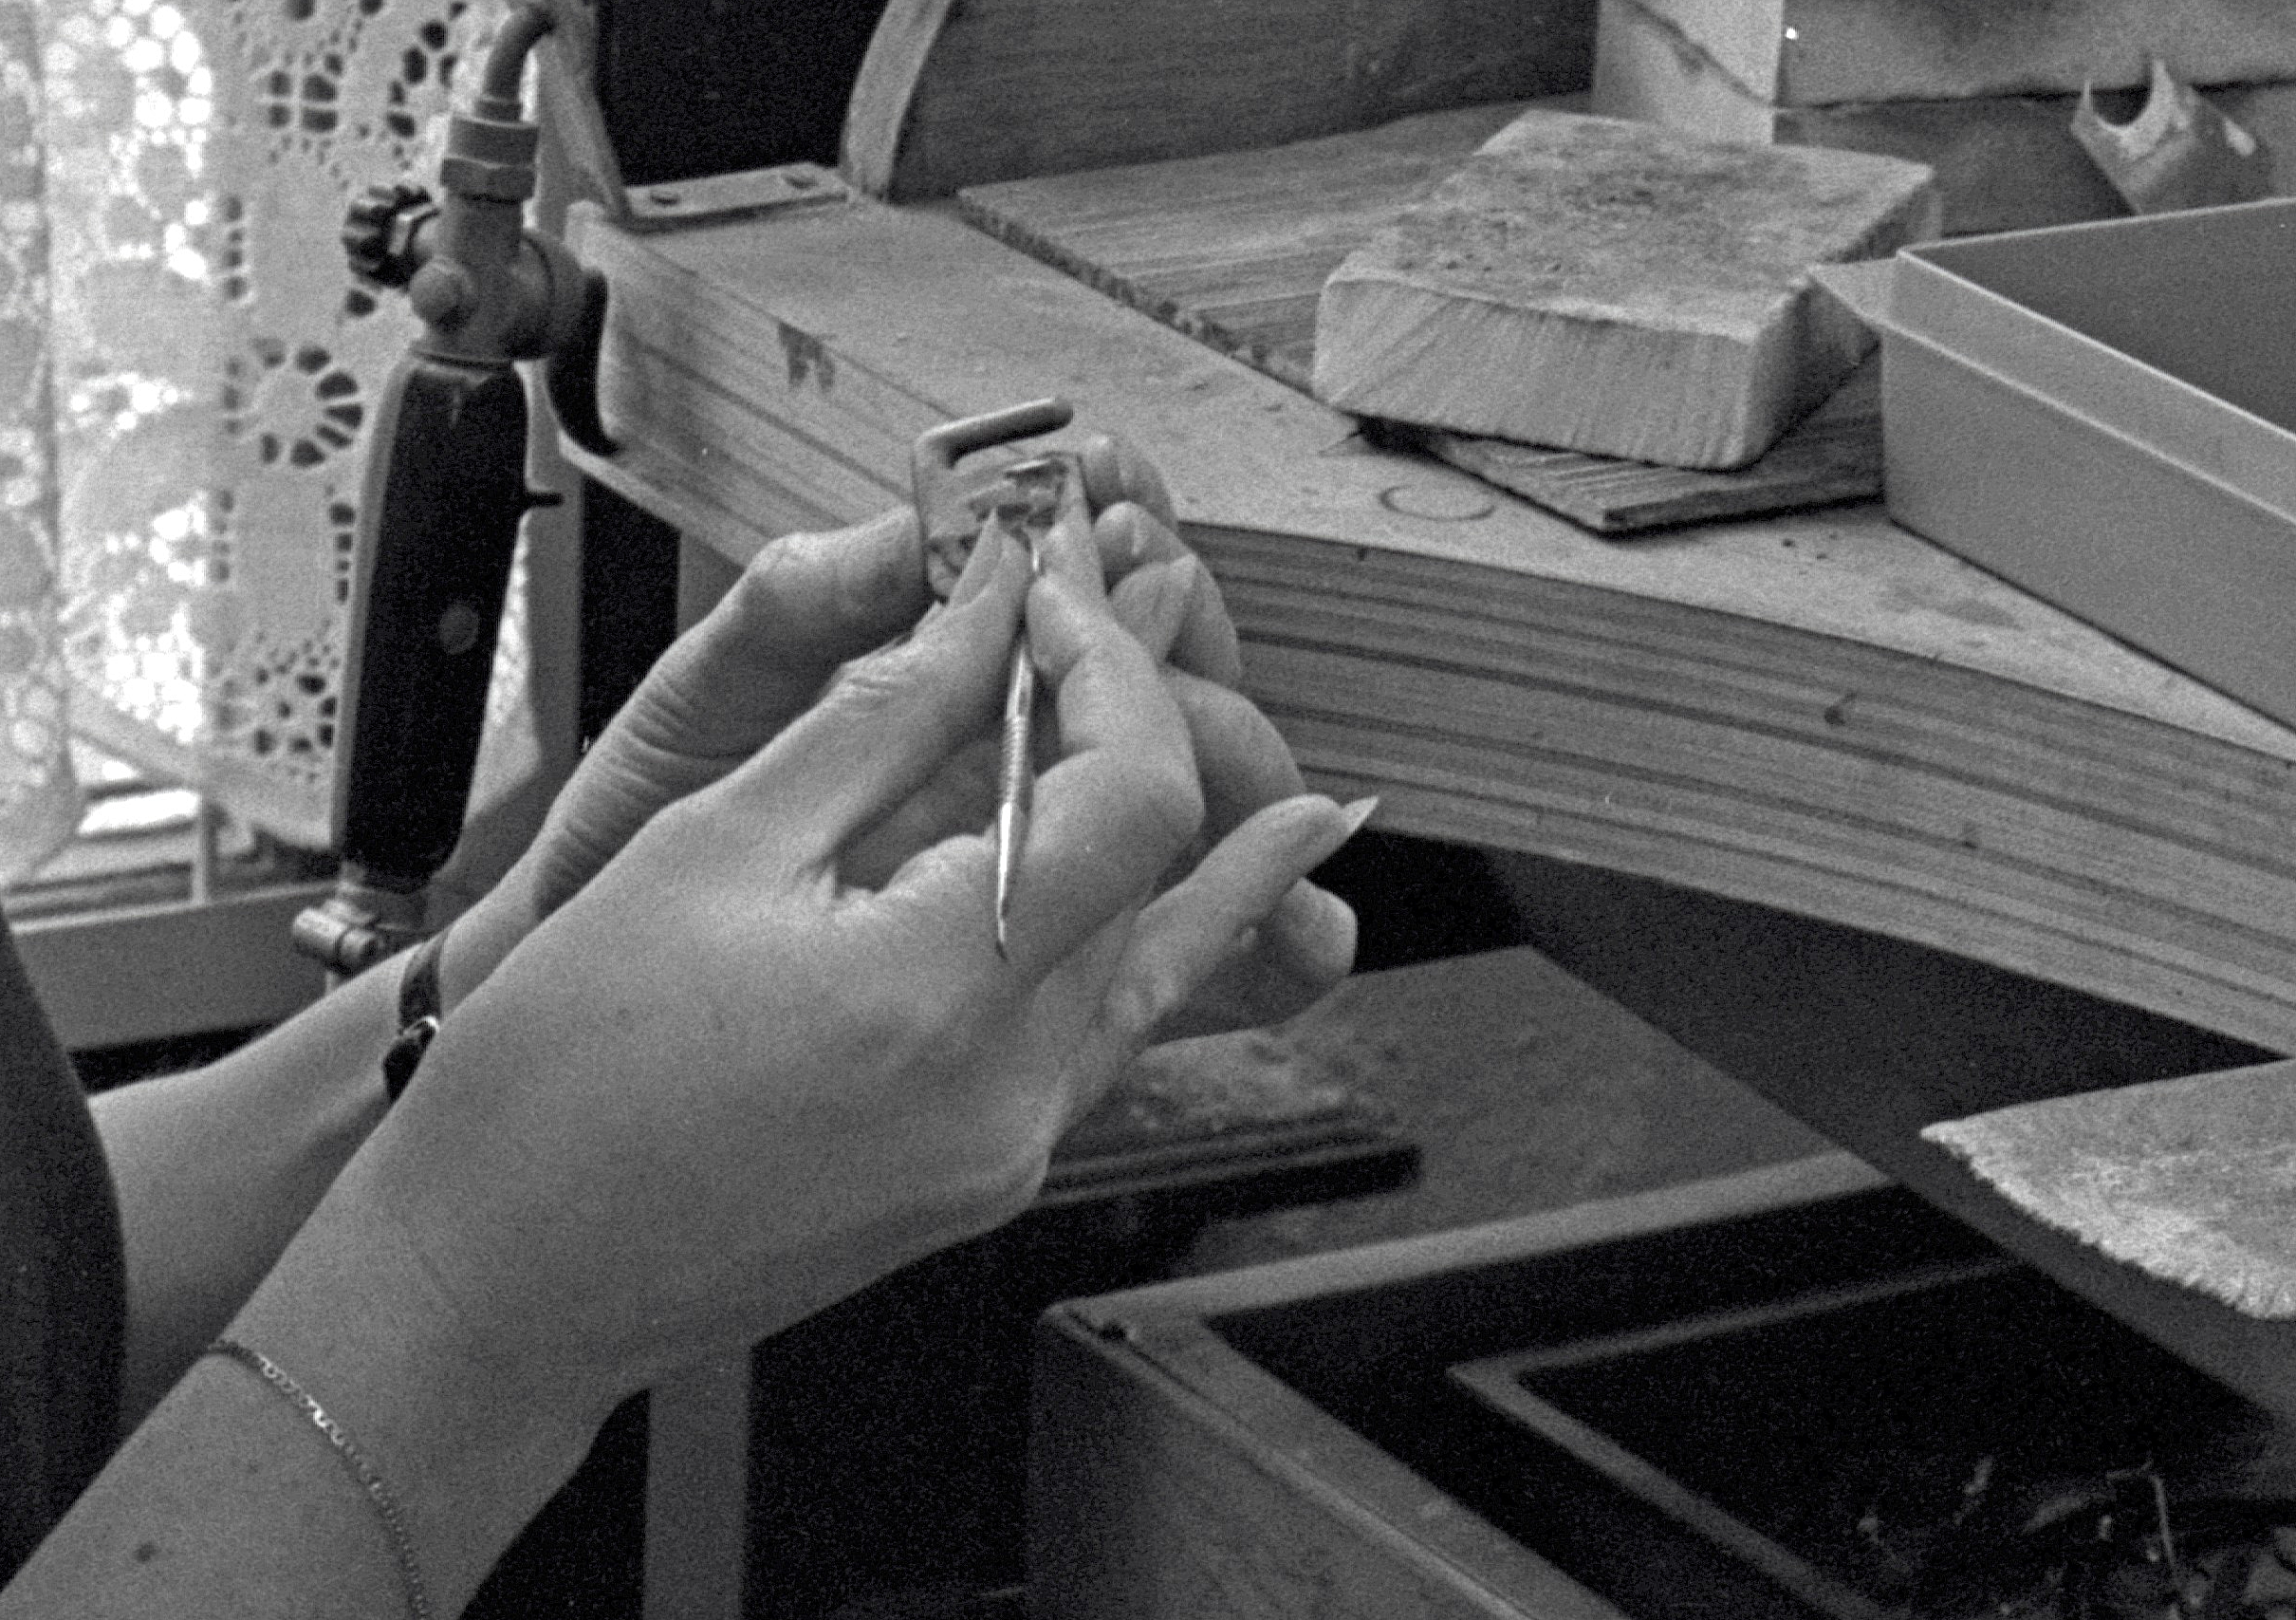 zwart-wit foto van de handen van edelsmid Dorien van Loggem tijdens het vervaardigen van de ambtsketen in 1980